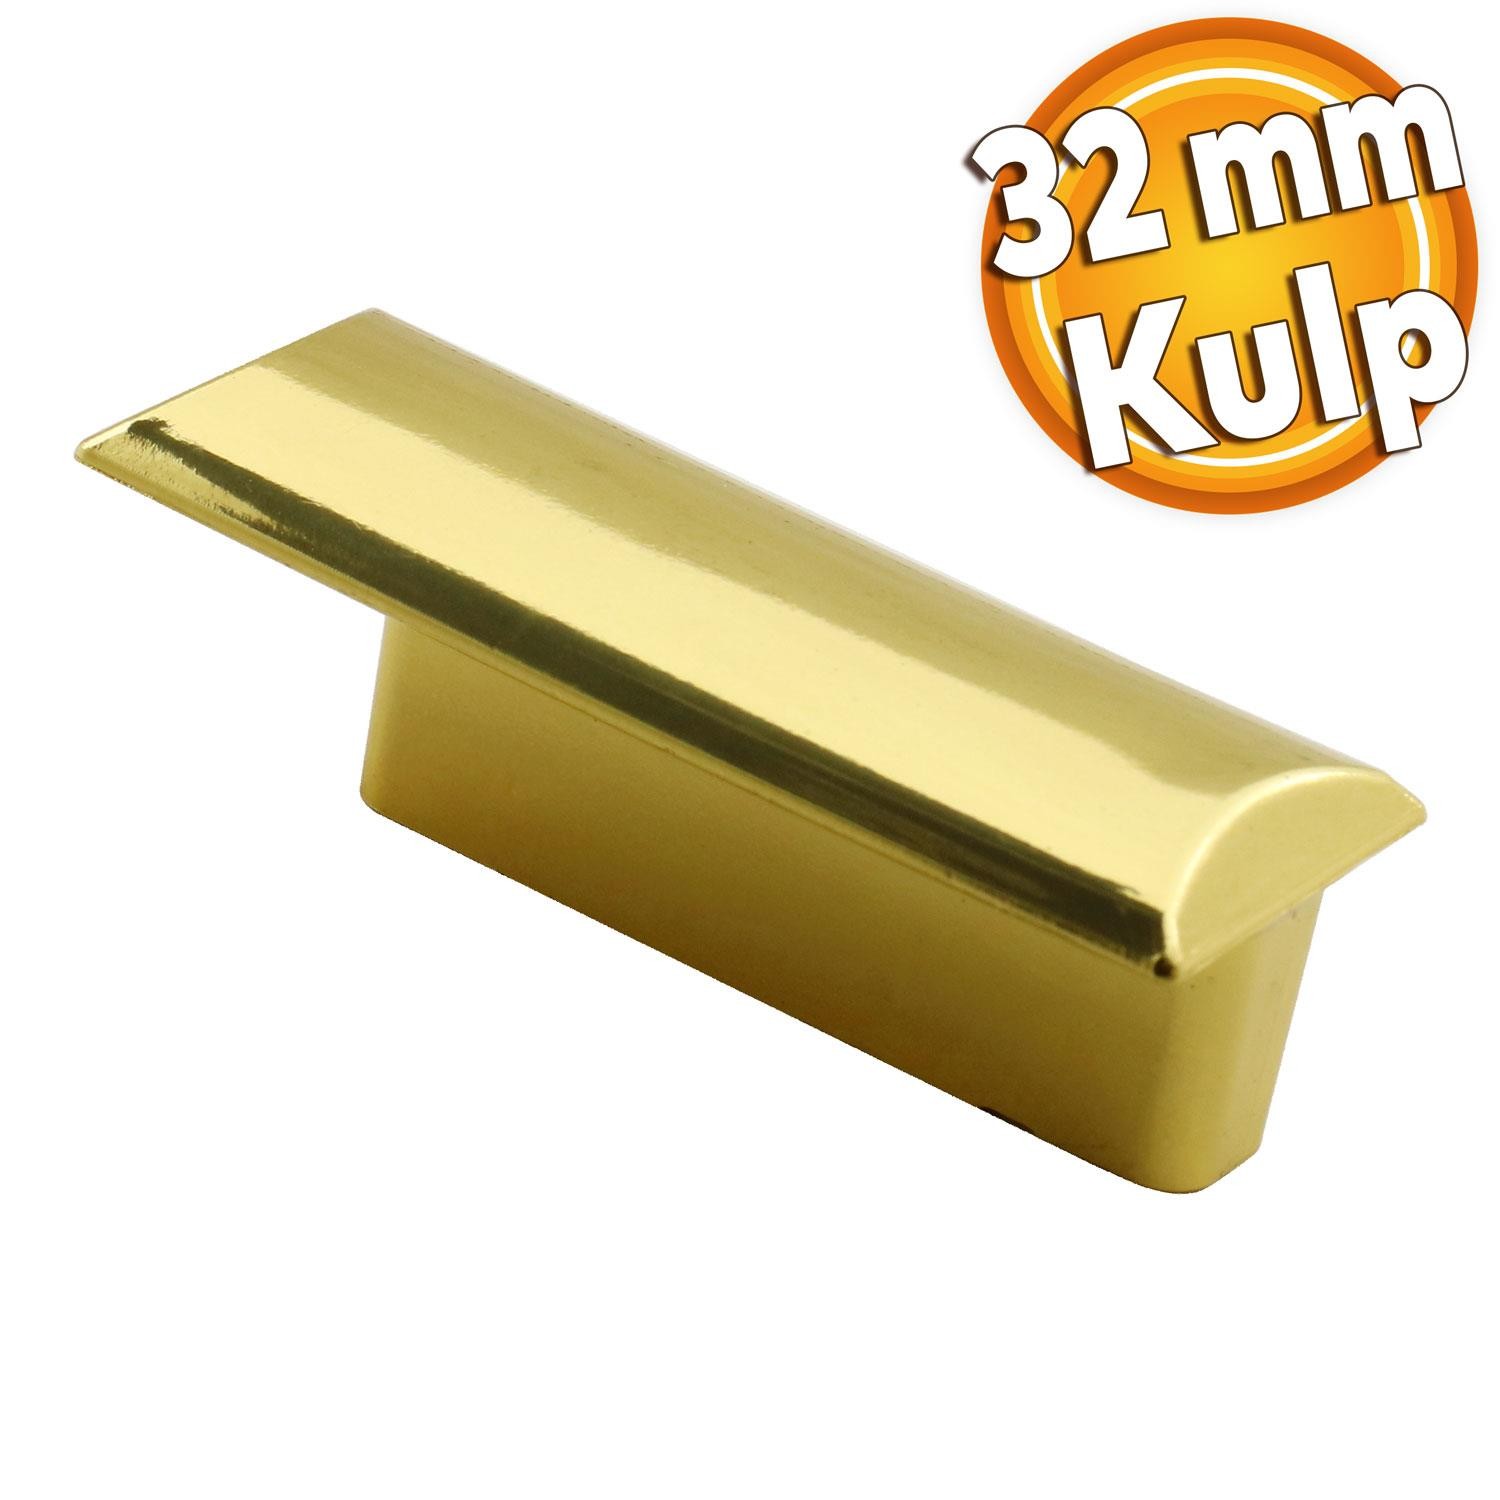 Notre Düğme Çekmece Dolap Kapak Kulpu Kulbu Plastik Gold Altın Kulp 32 mm